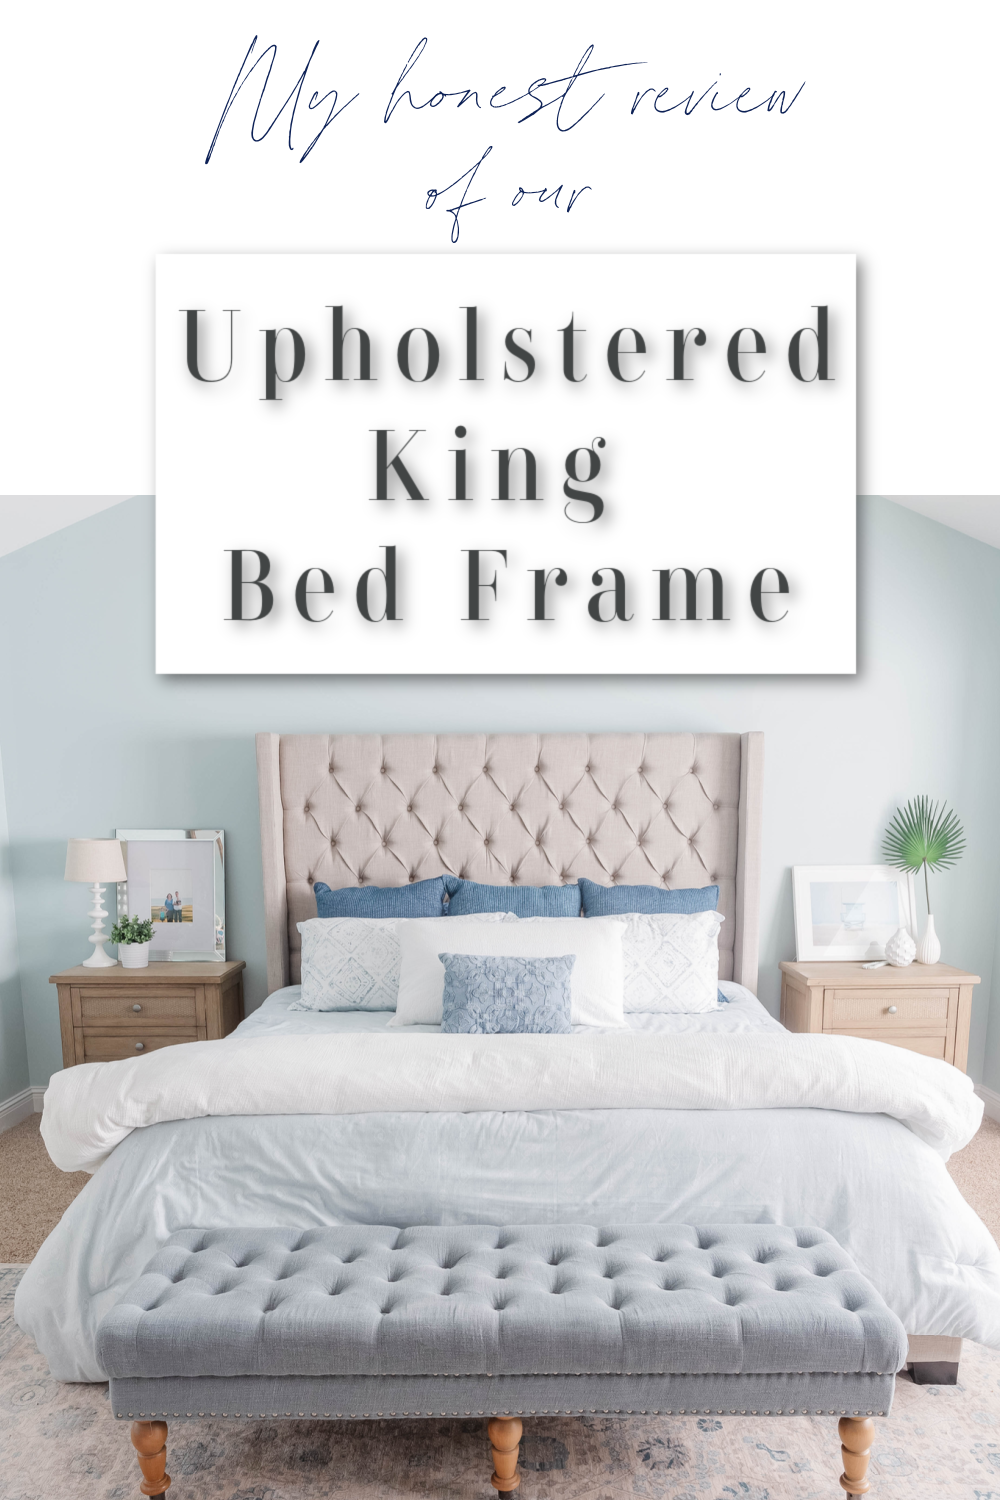 Upholstered King Bed Frame - Grey Upholstered Bed Frame - King Size Bed Frame - Upholstered Queen Bed Frame